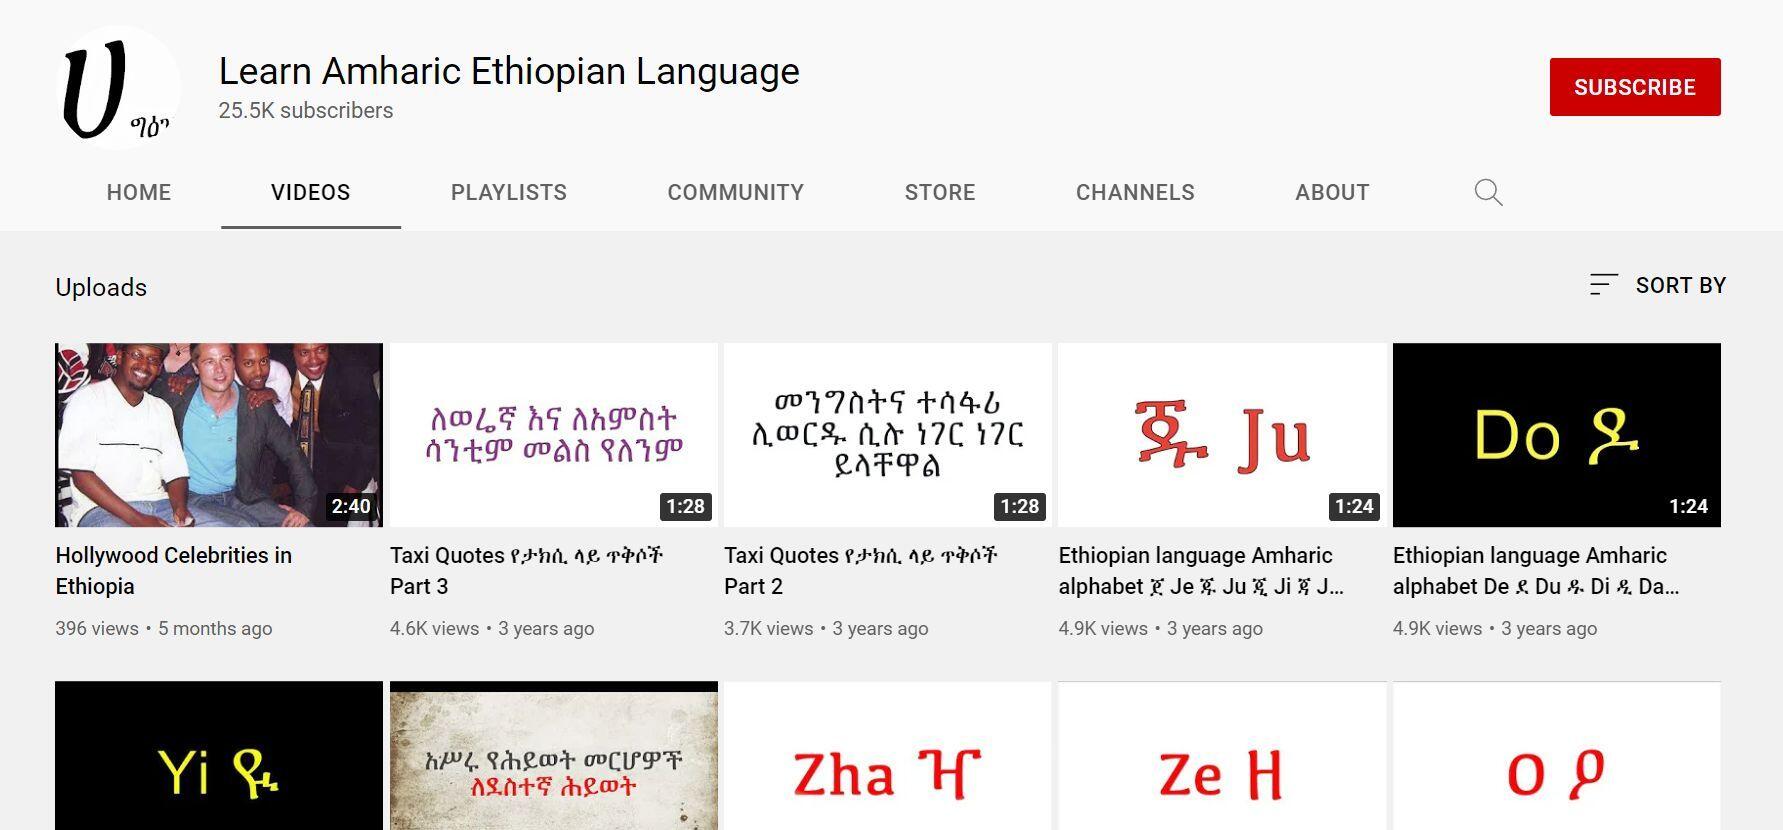 Learn Amharic YouTube 4